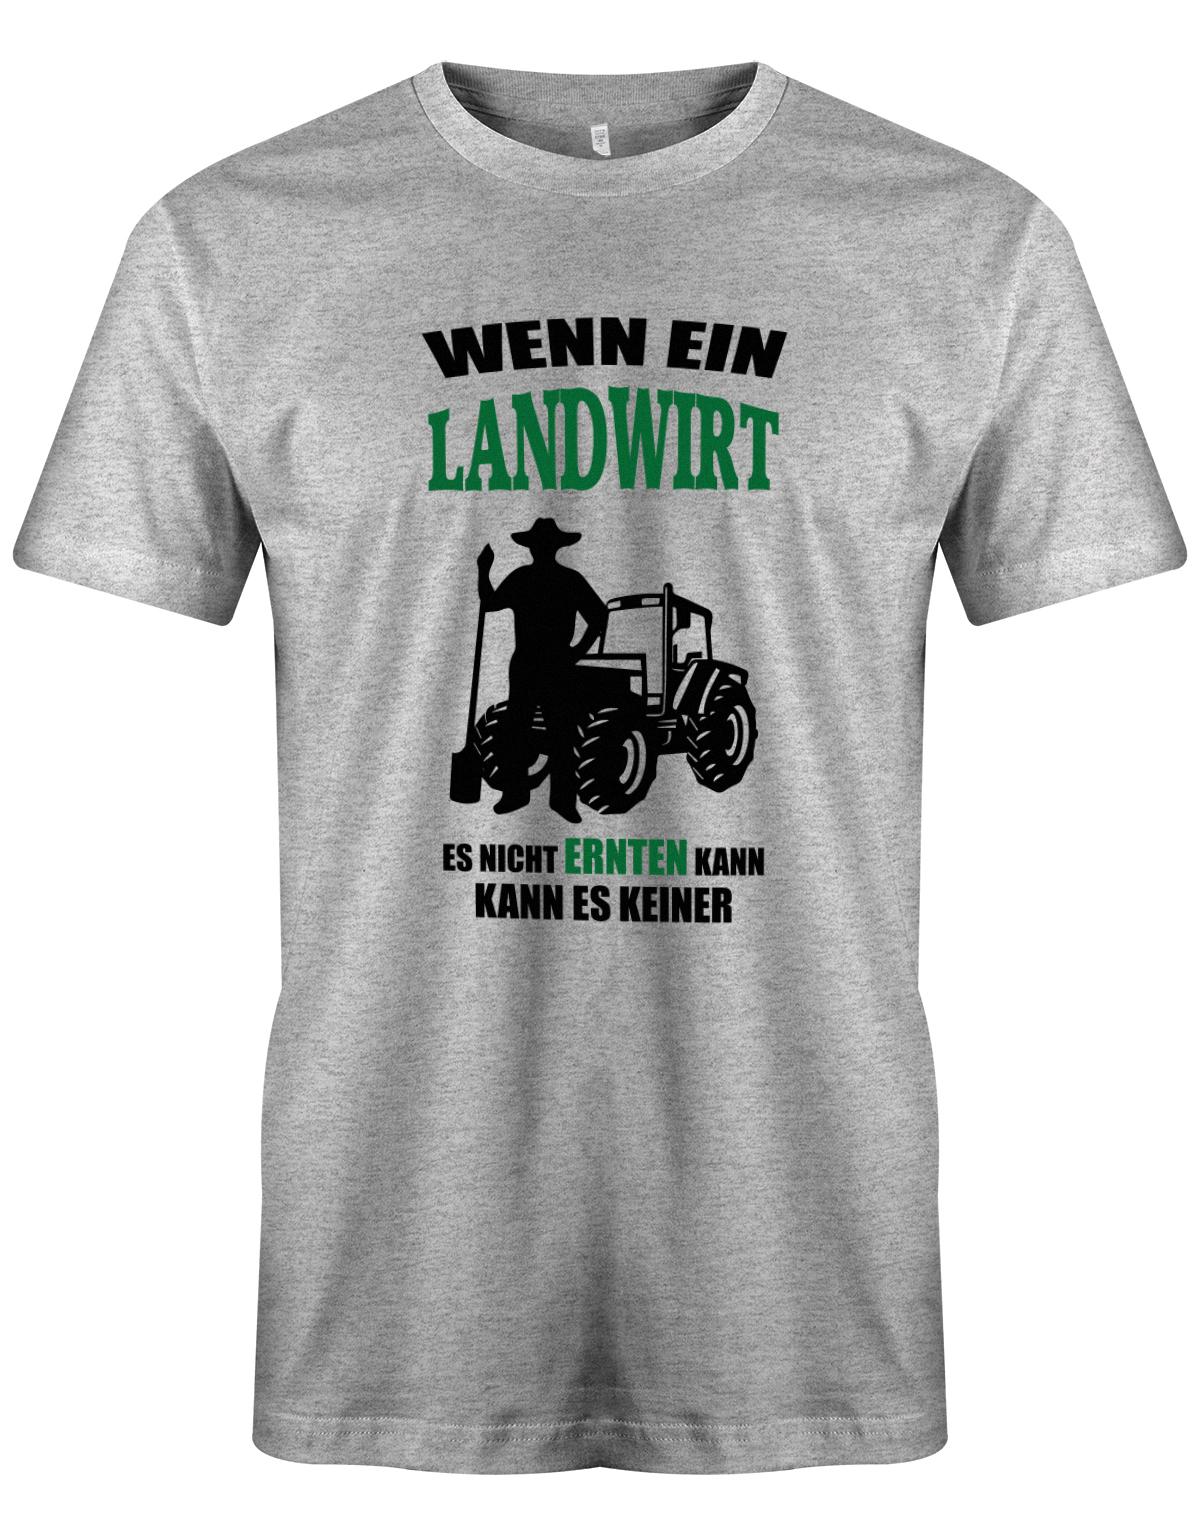 Landwirtschaft Shirt Männer - Wenn ein Landwirt es nicht ernten kann. Kann es keiner Grau